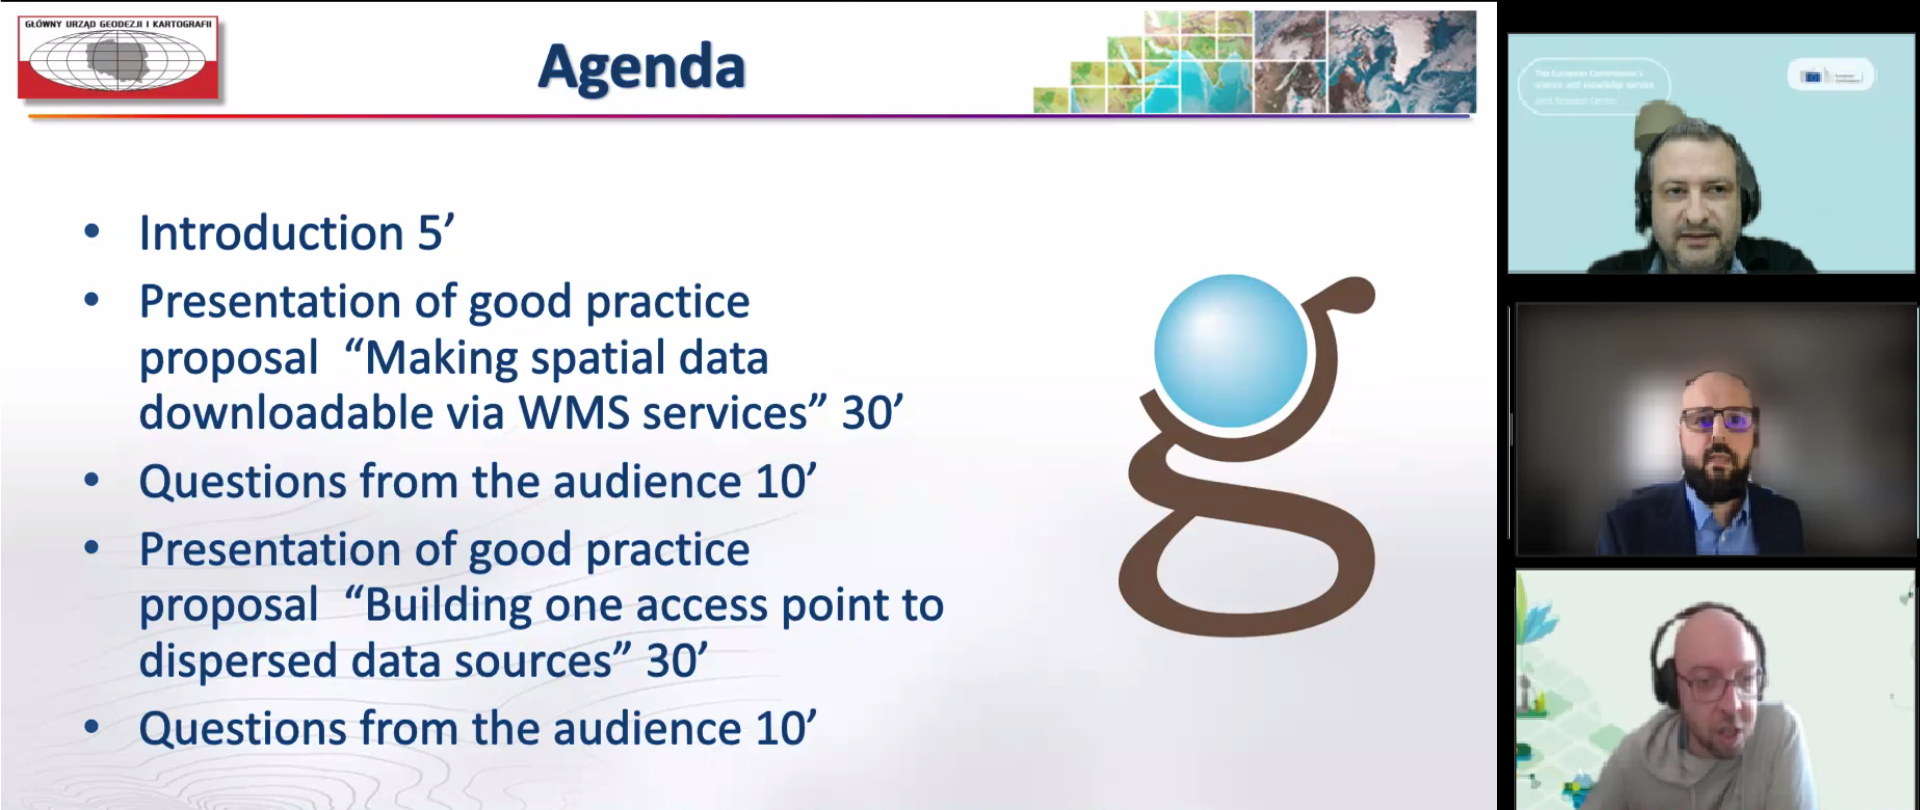 Zrzut ekranu z programu do prowadzenia konferencji online. Po lewej stronie fragment prezentacji przedstawiający agendę wydarzenia, a po prawej uczestnicy i prowadzący spotkanie.